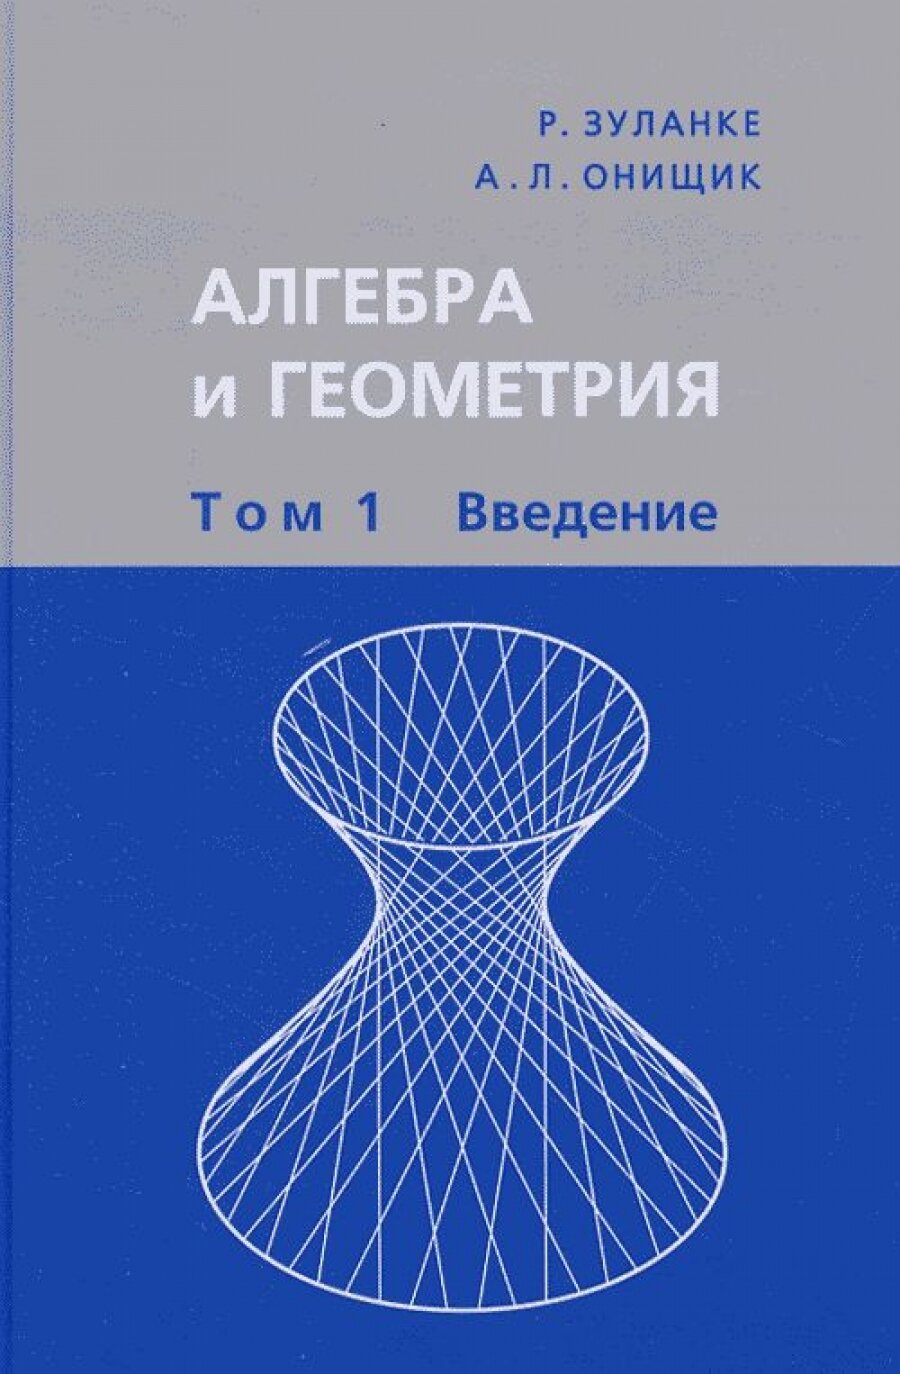 Алгебра и геометрия. В 3 томах. Том 1. Введение